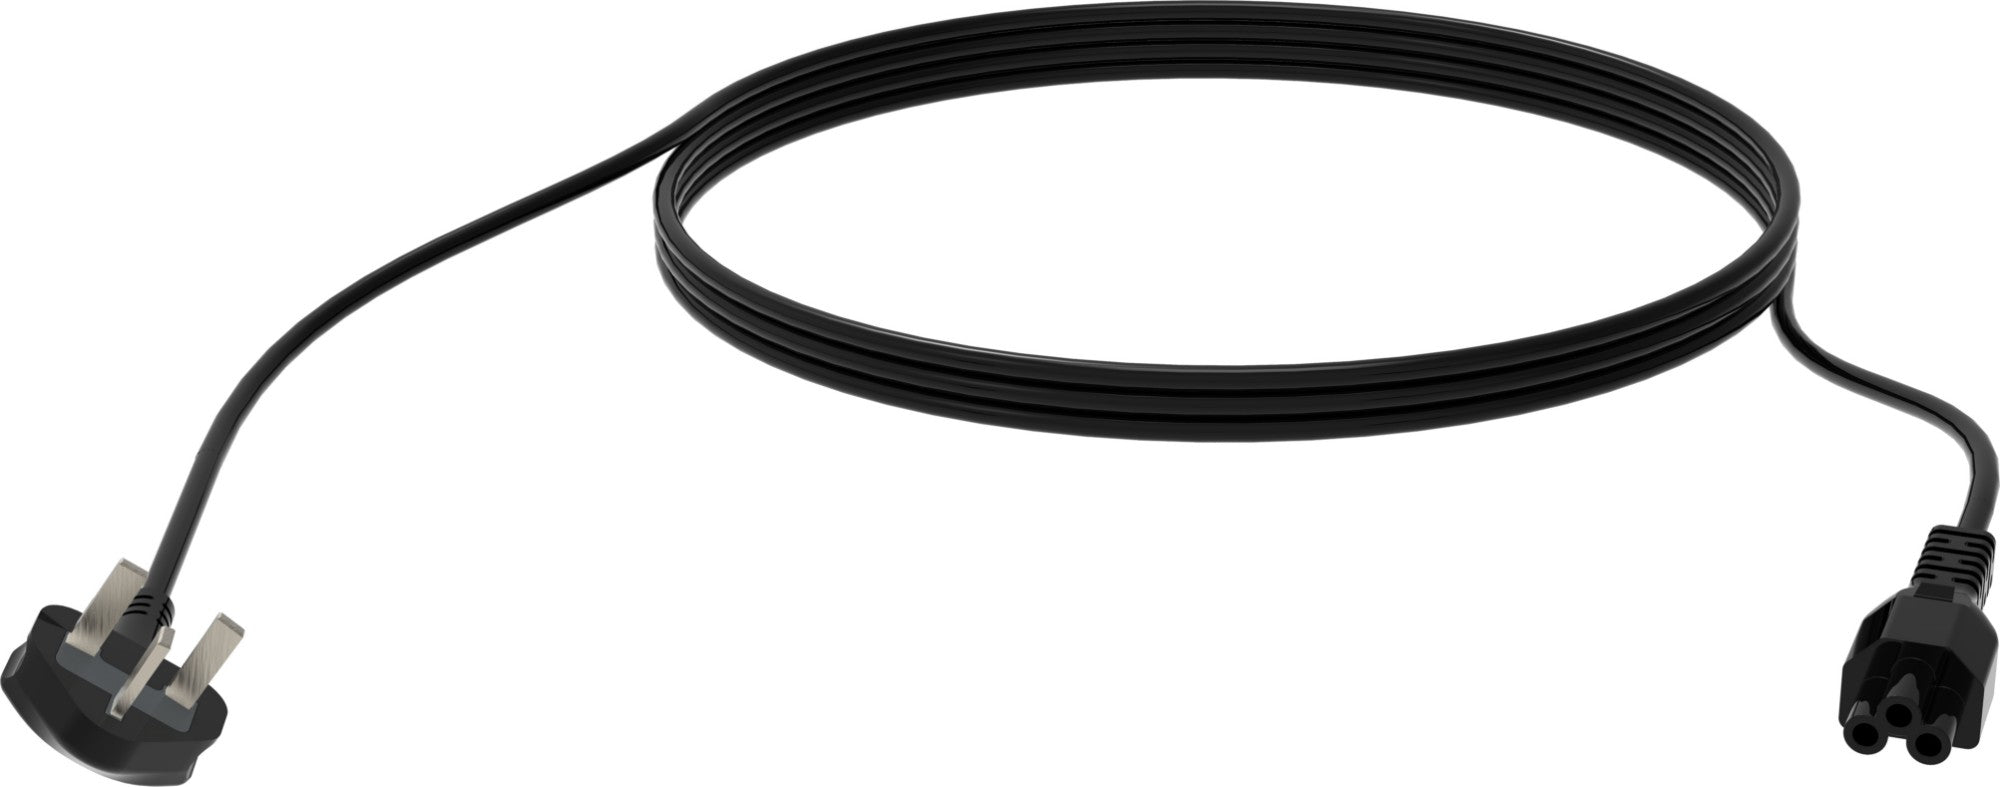 Vision TC 3MUKCVLF/BL power cable Black 3 m BS 1363 IEC C5